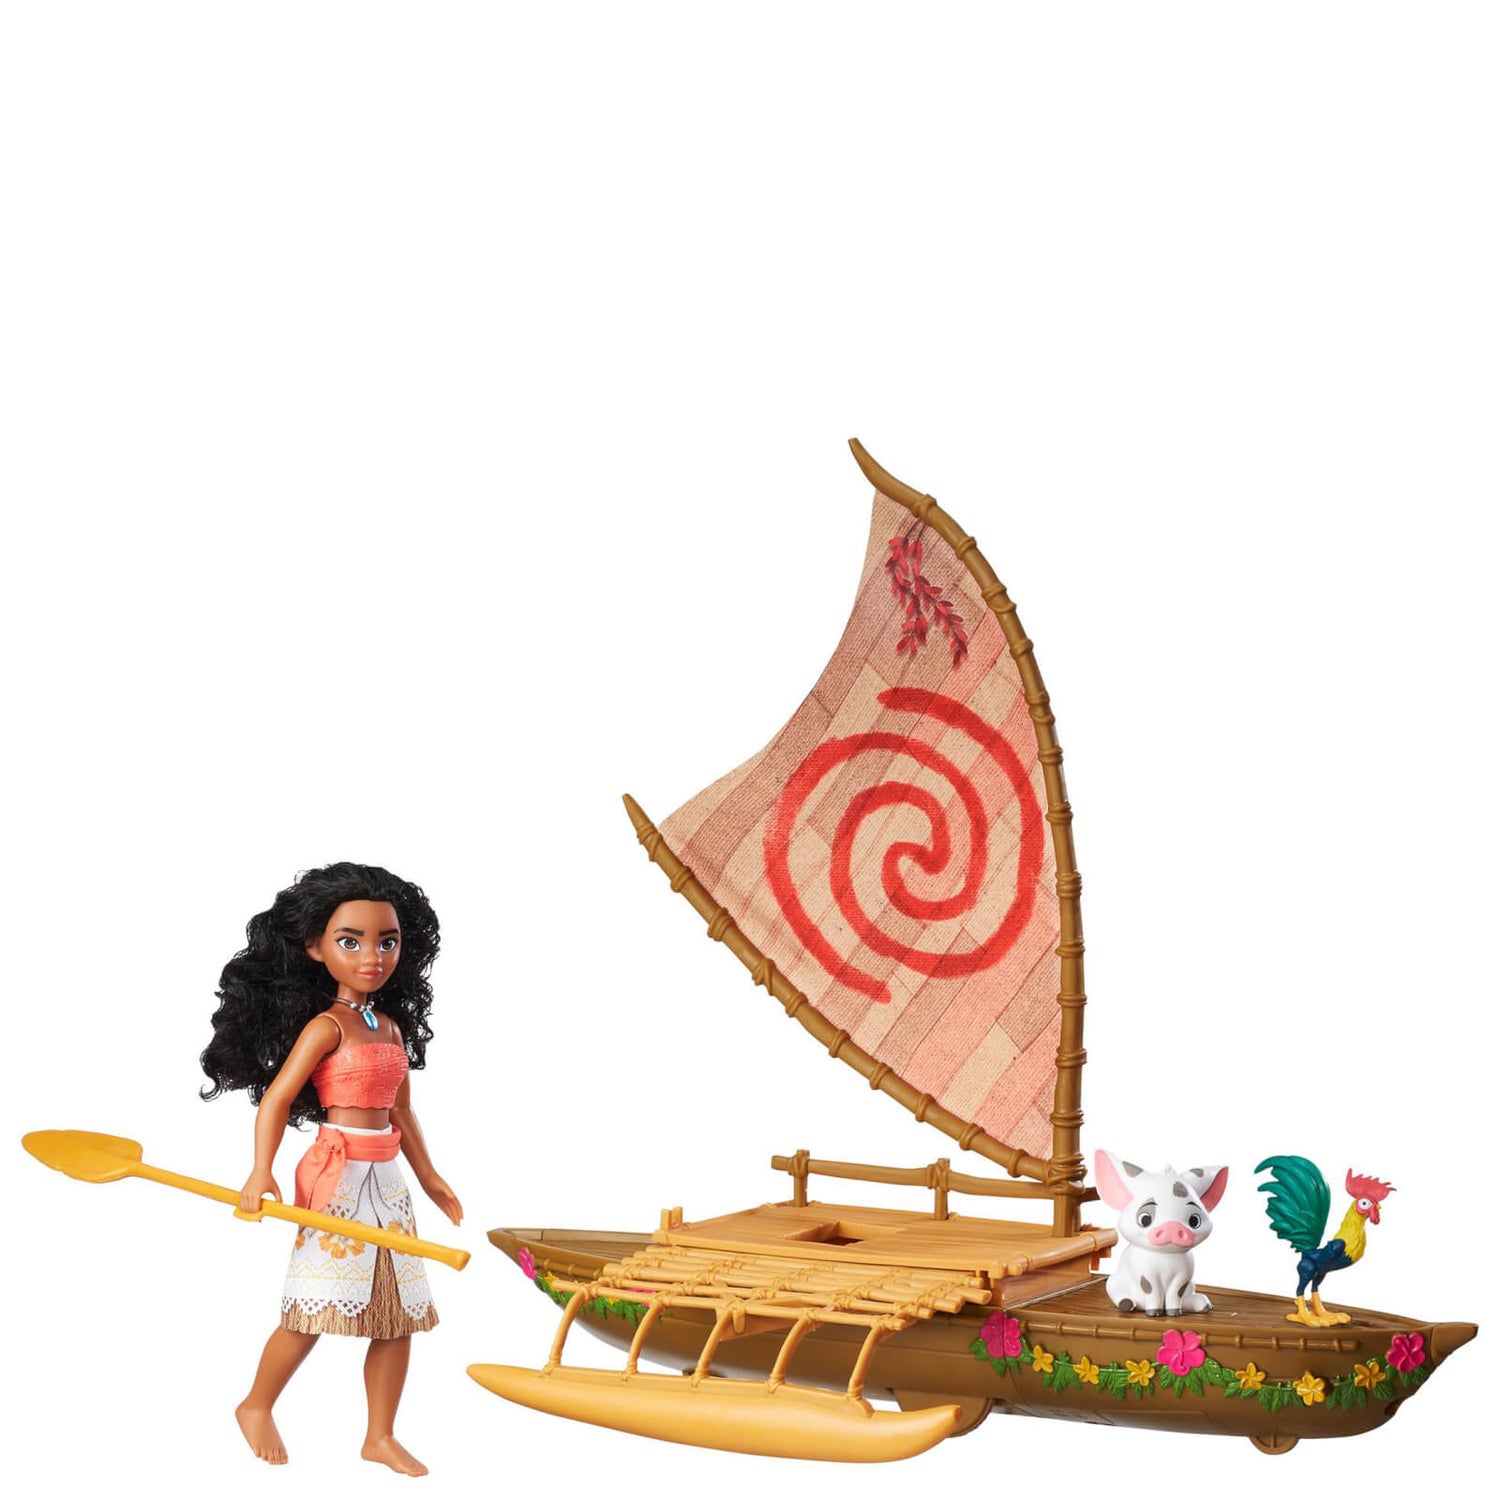 Alinear Insignificante Juramento Disney Moana Starlight Canoe and Friends Toys | Zavvi España